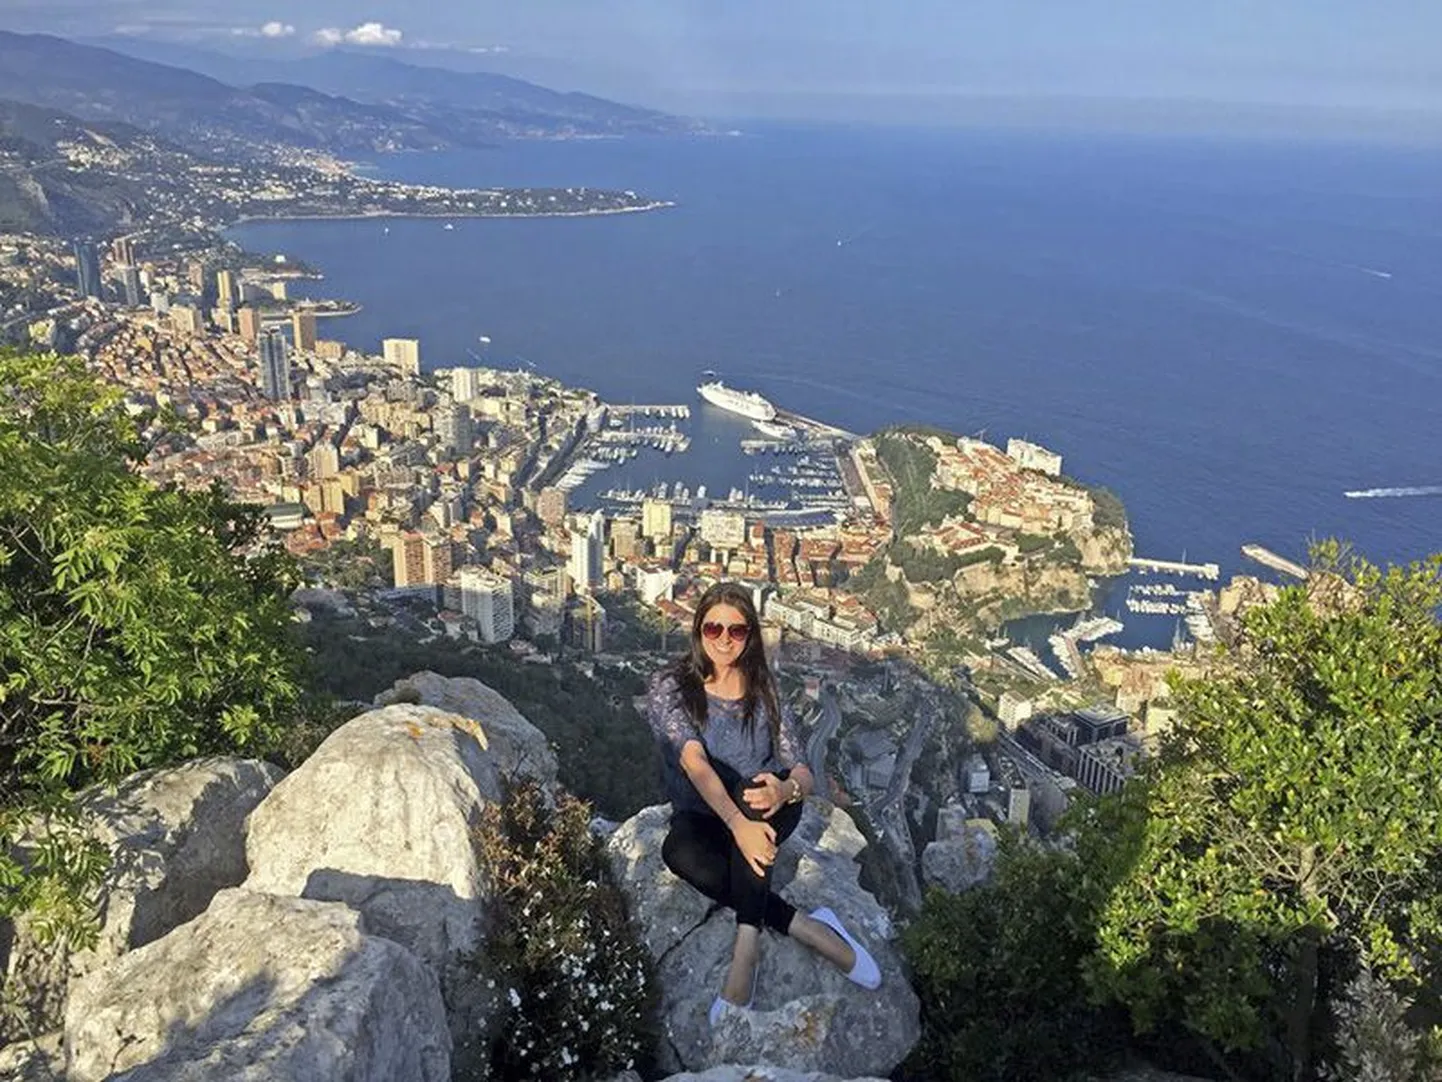 Rakveres sündinud-kasvanud Kristel Nurmist vastas Monaco rahvusvahelise ülikooli vastuvõtukomisjoni ettekujutusele luksushotelli teenindajast.